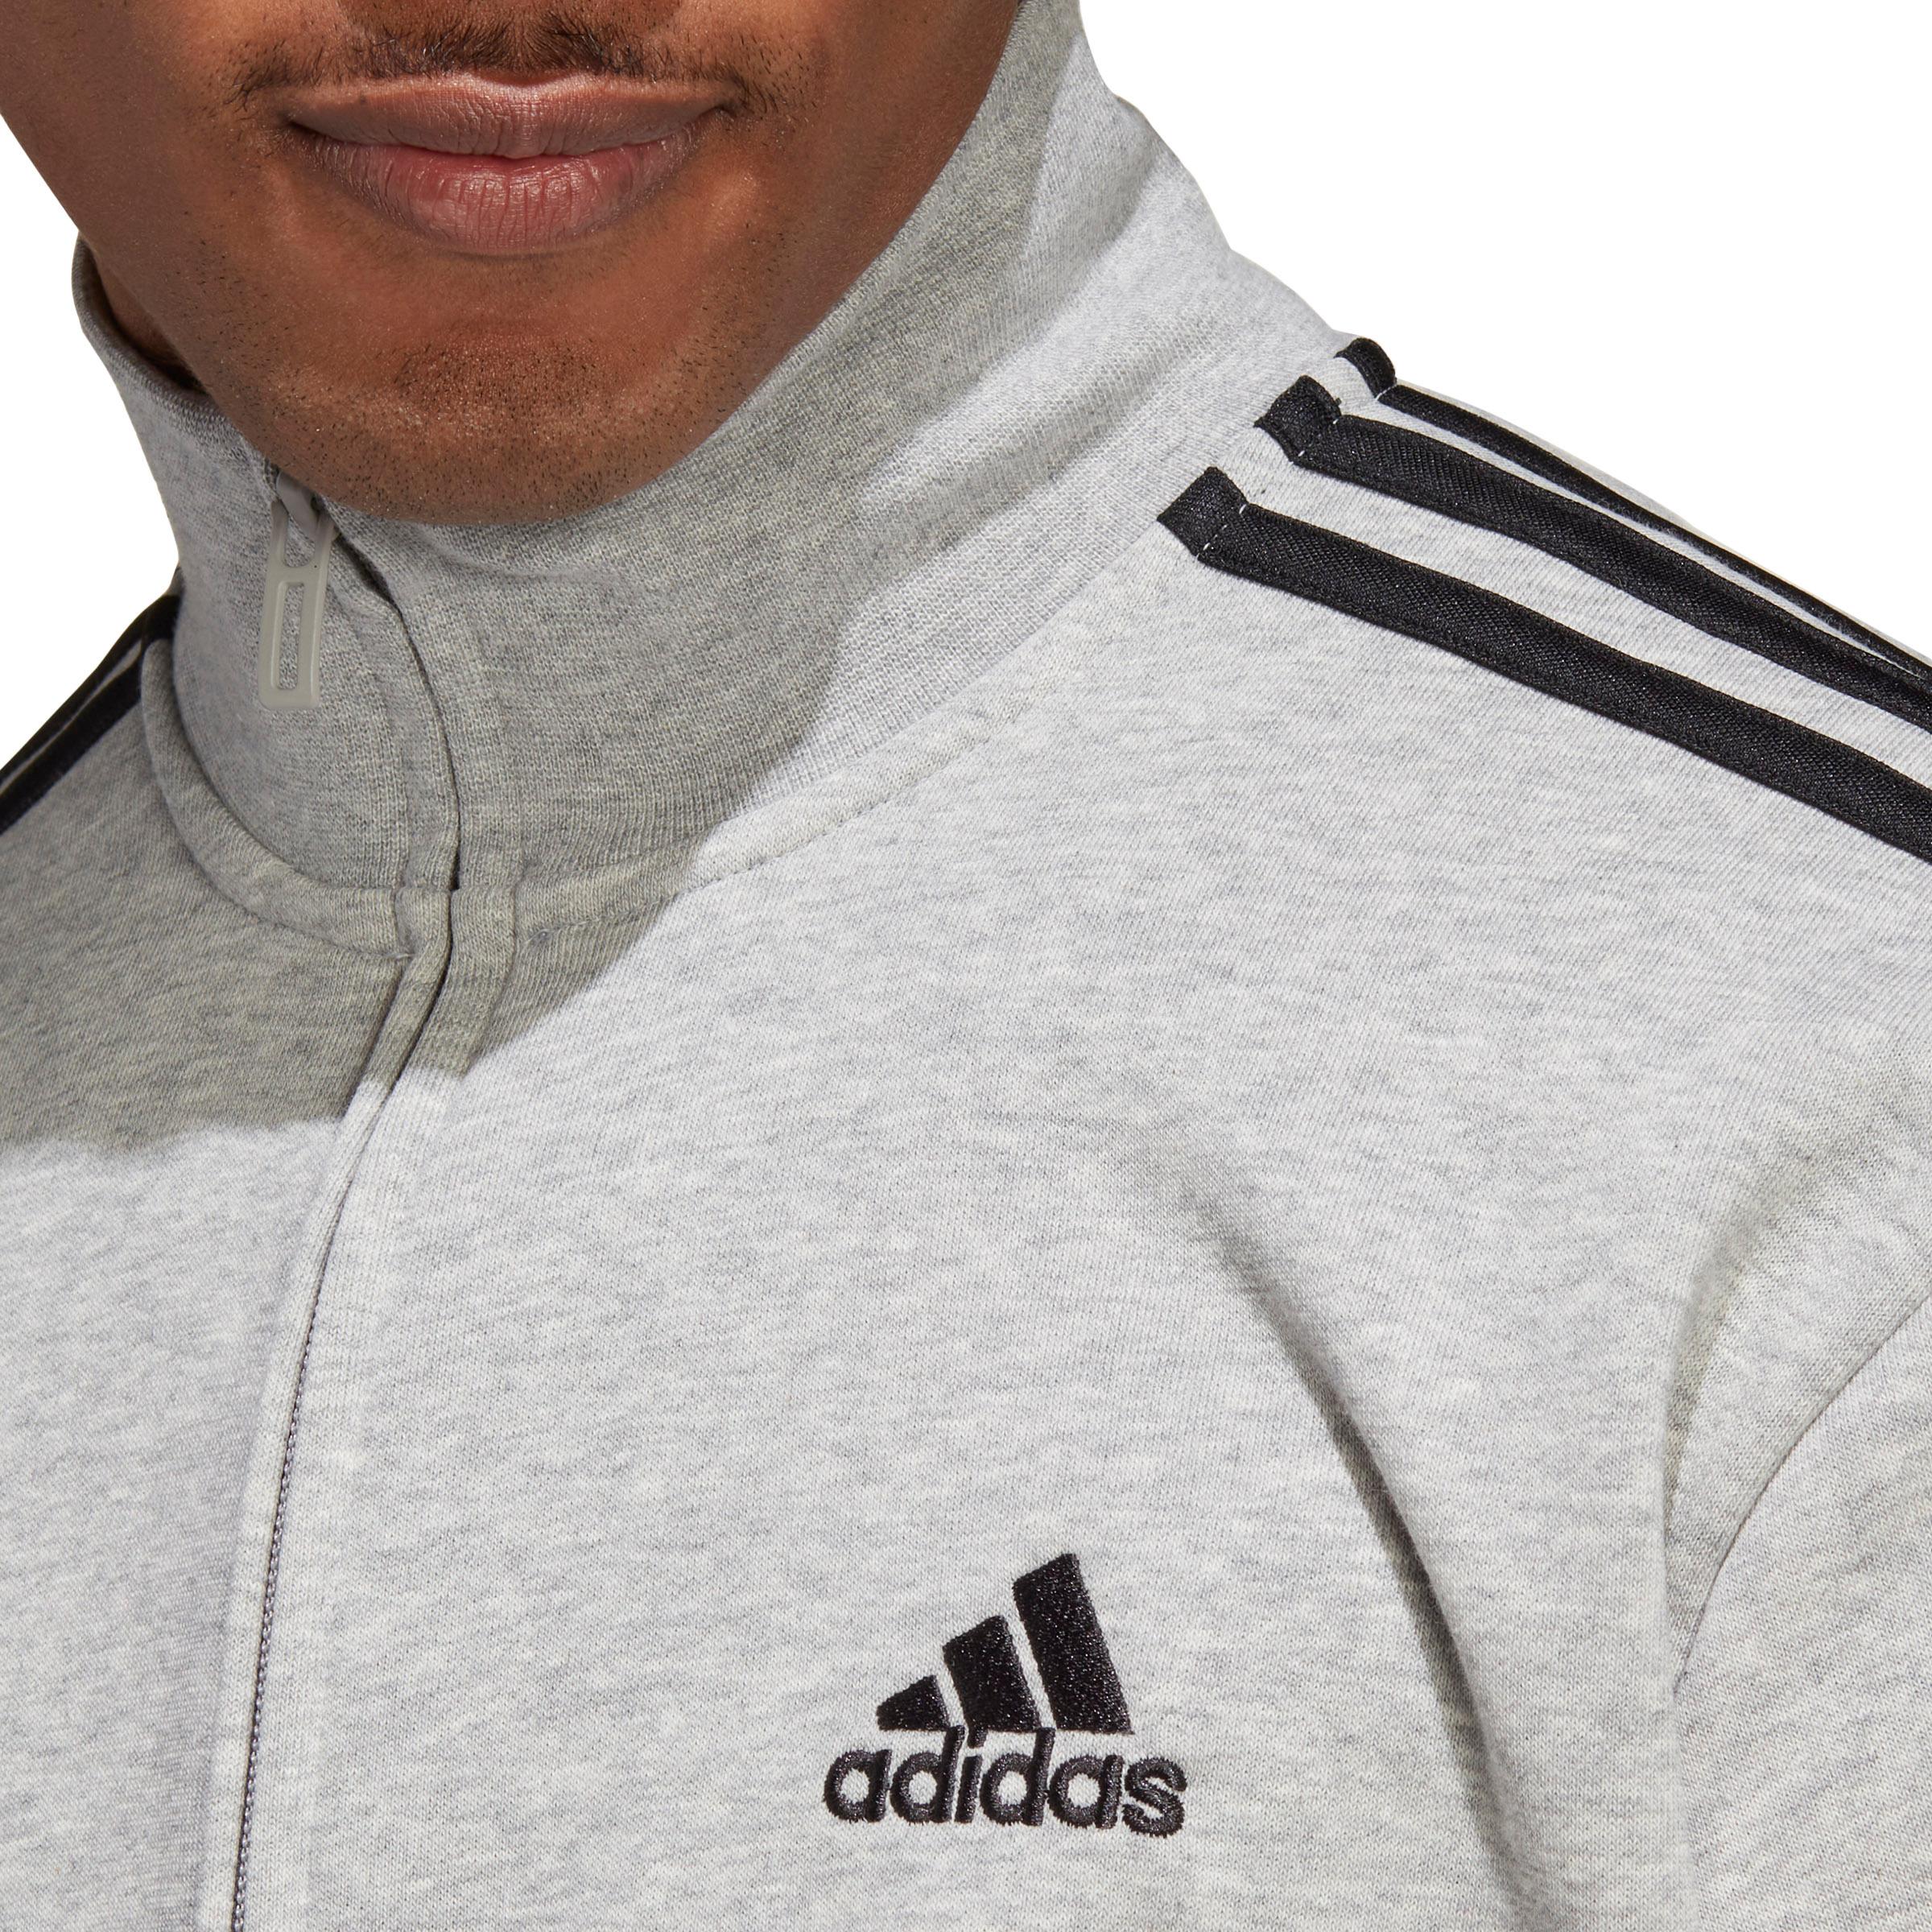 Adidas BASIC 3-STREIFEN FRENCH TERRY grey Trainingsanzug von Herren Online Shop medium heather-black SportScheck kaufen im